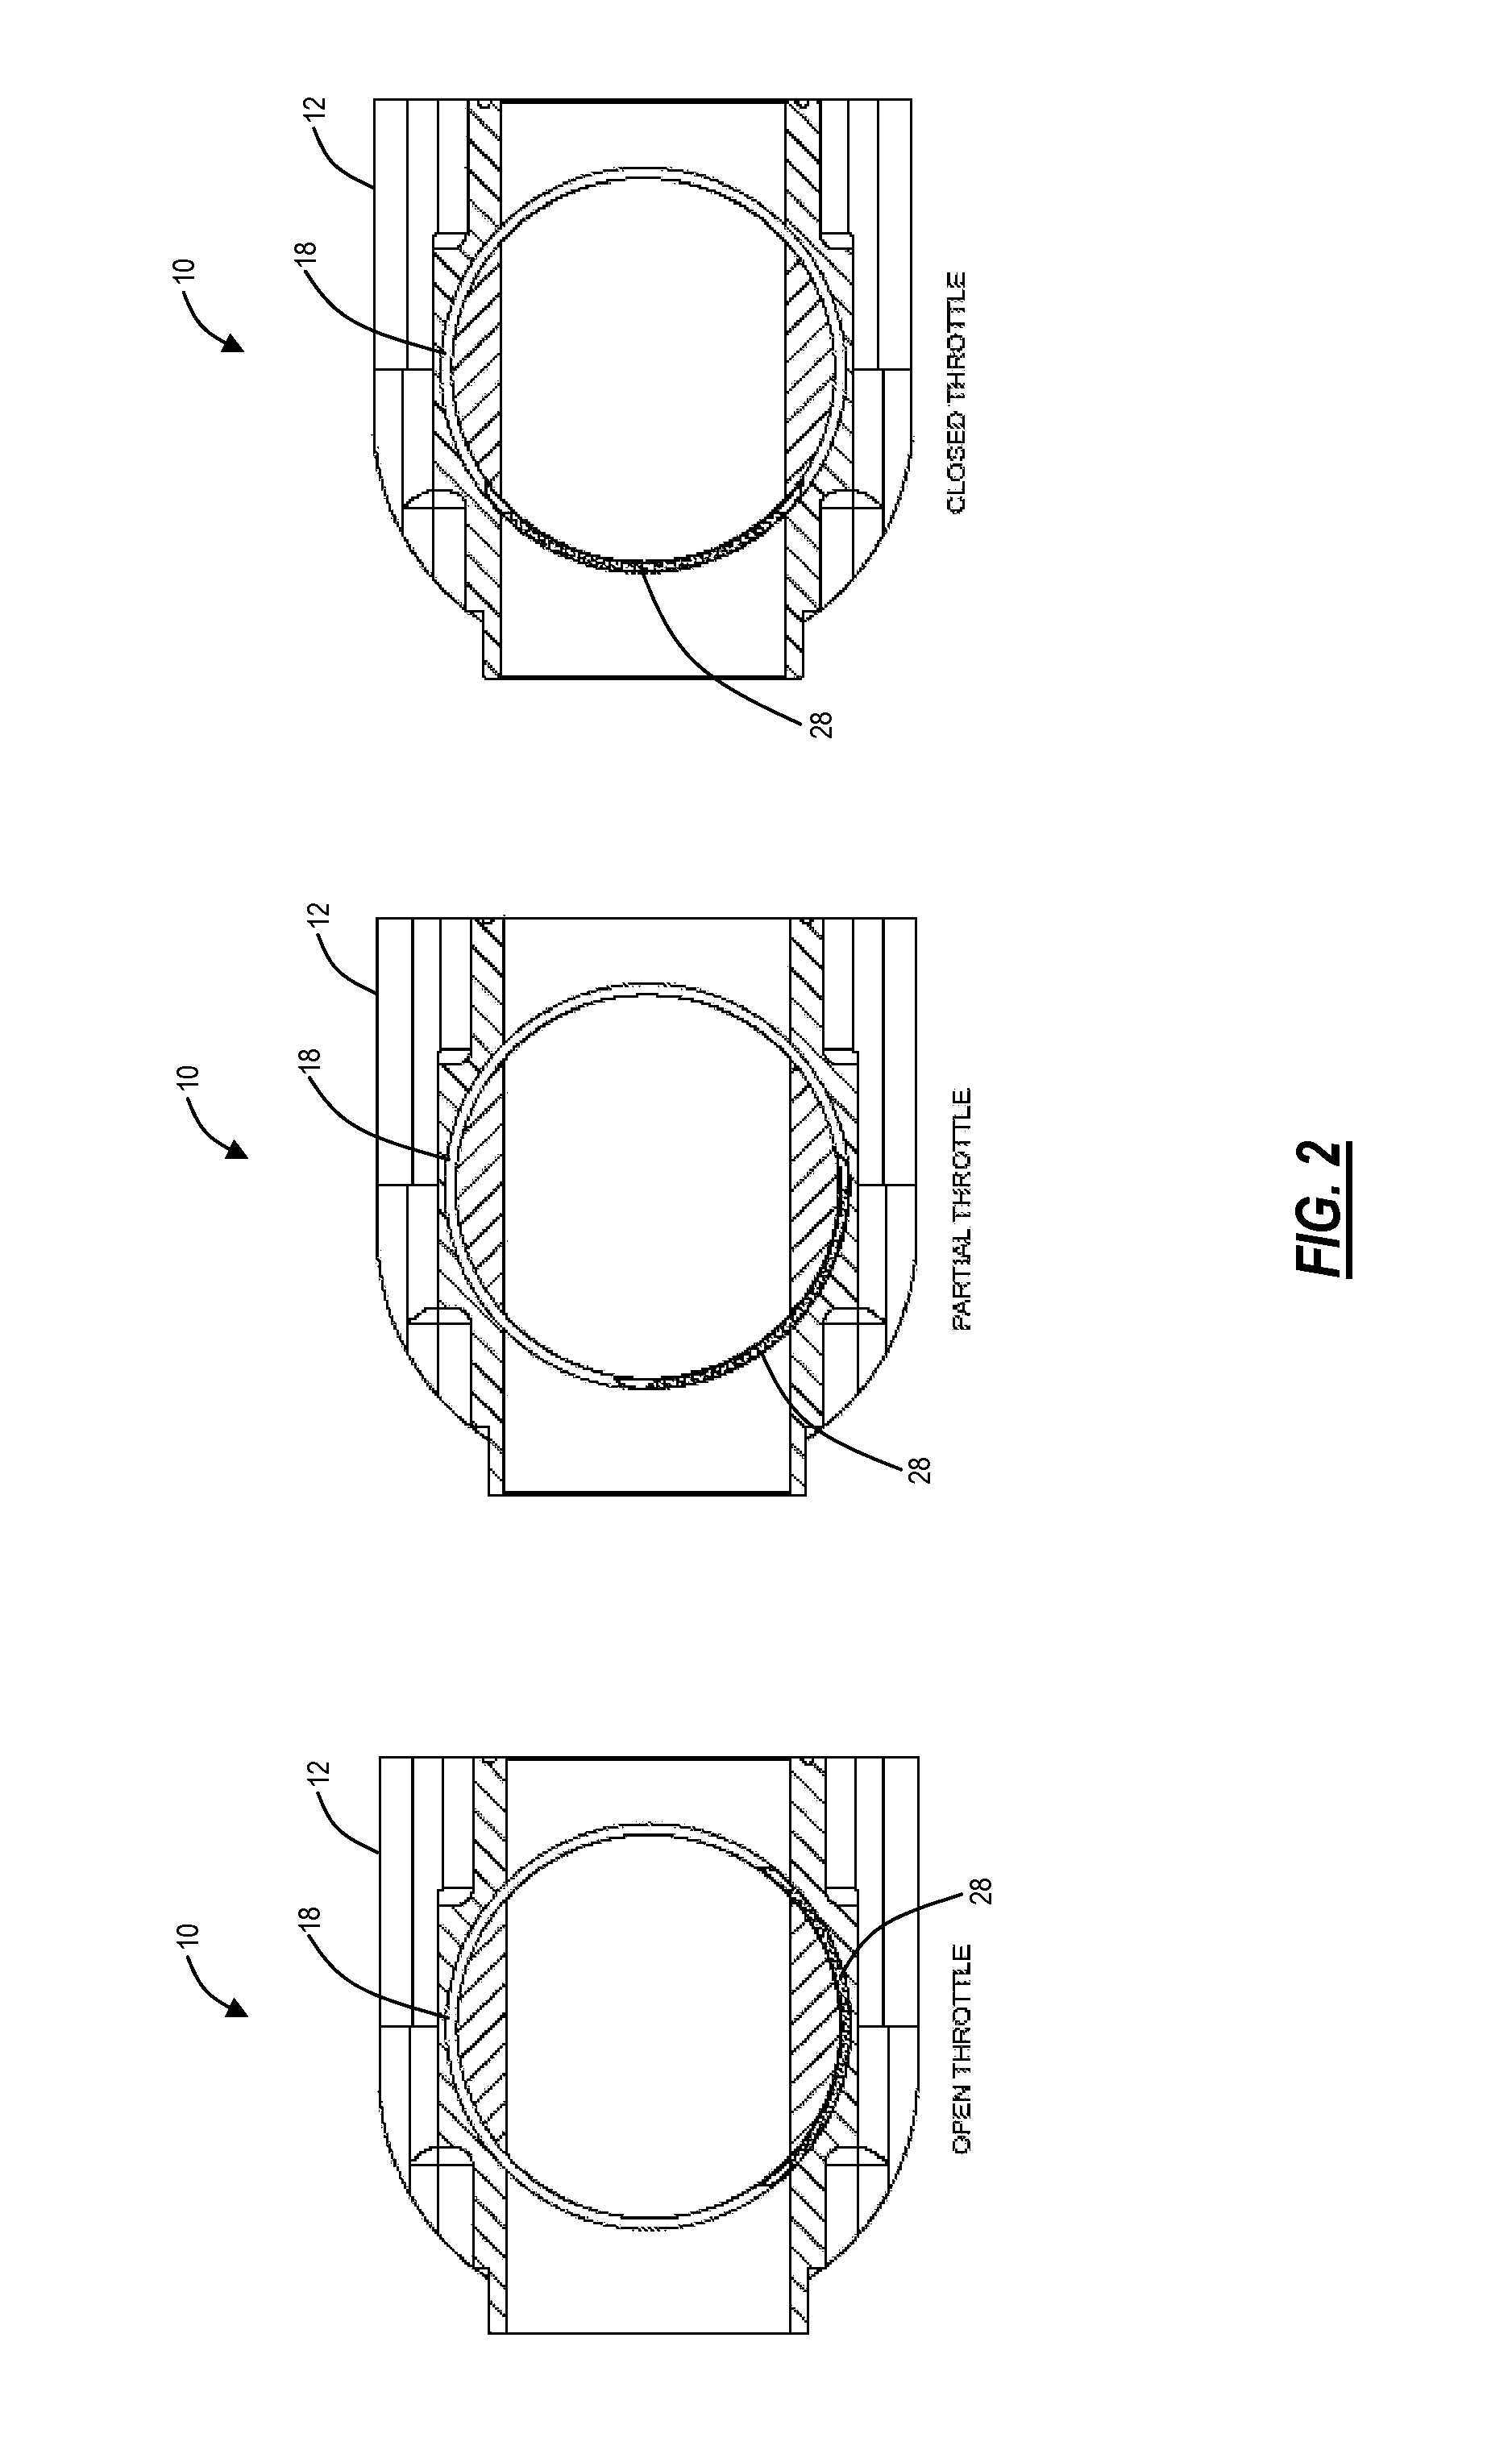 Cylindrical valve assembly